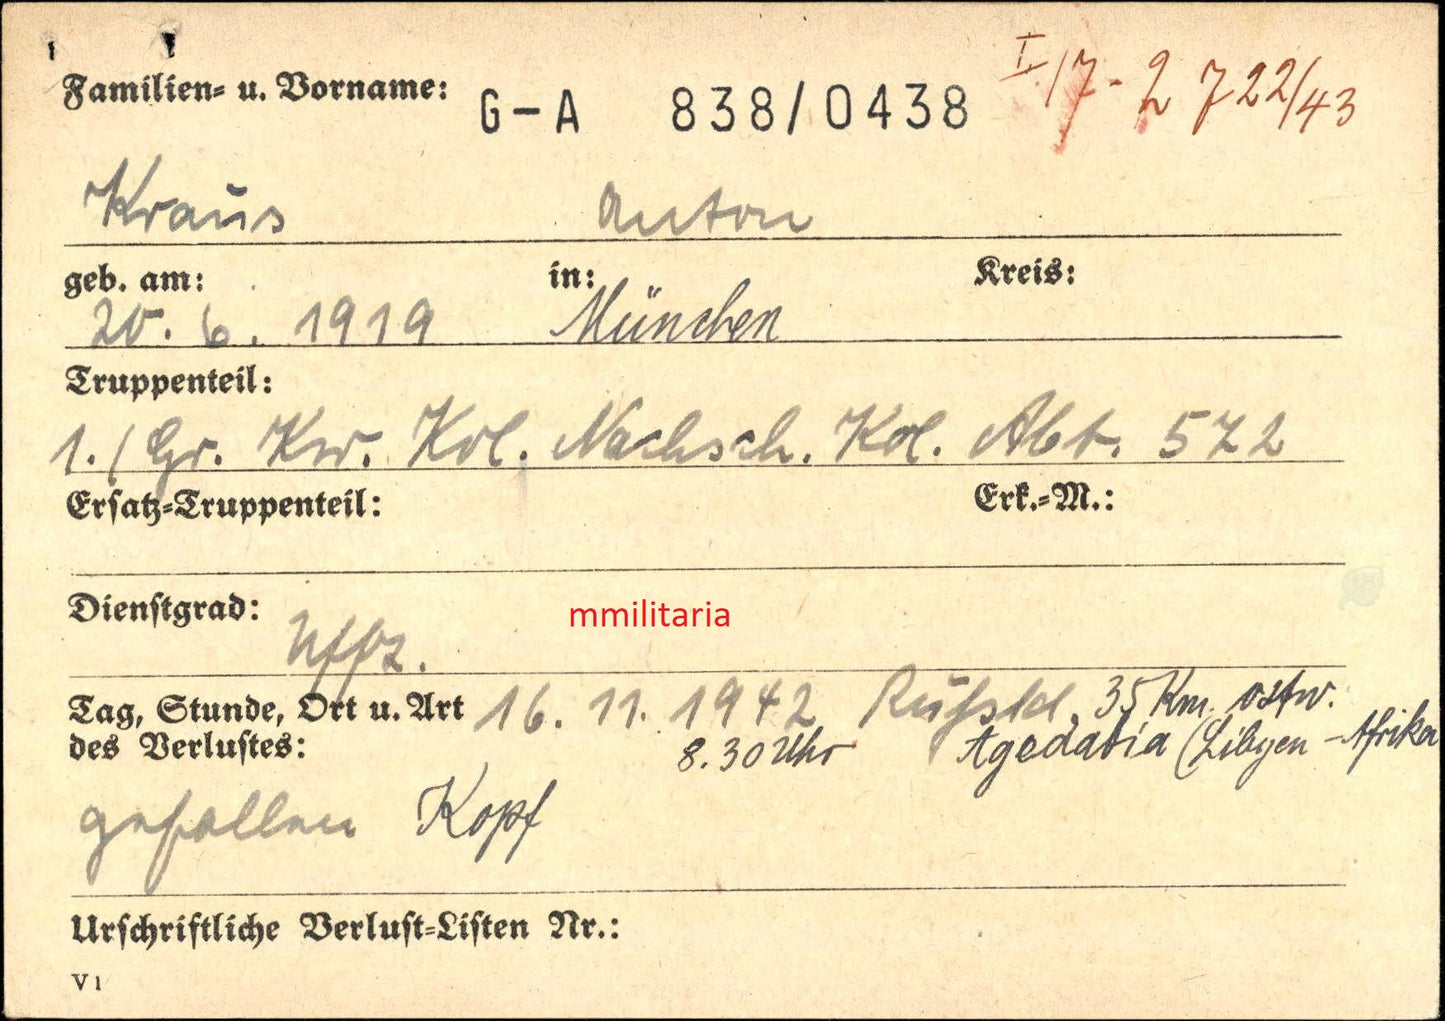 Sterbebild Unteroffizier & Staffelführer München 1. Gruppe Nachschub Kol. Abt. 572 dt.-ita. Erinnerungsmedaille DAK Agedabia Tobruk Lybien